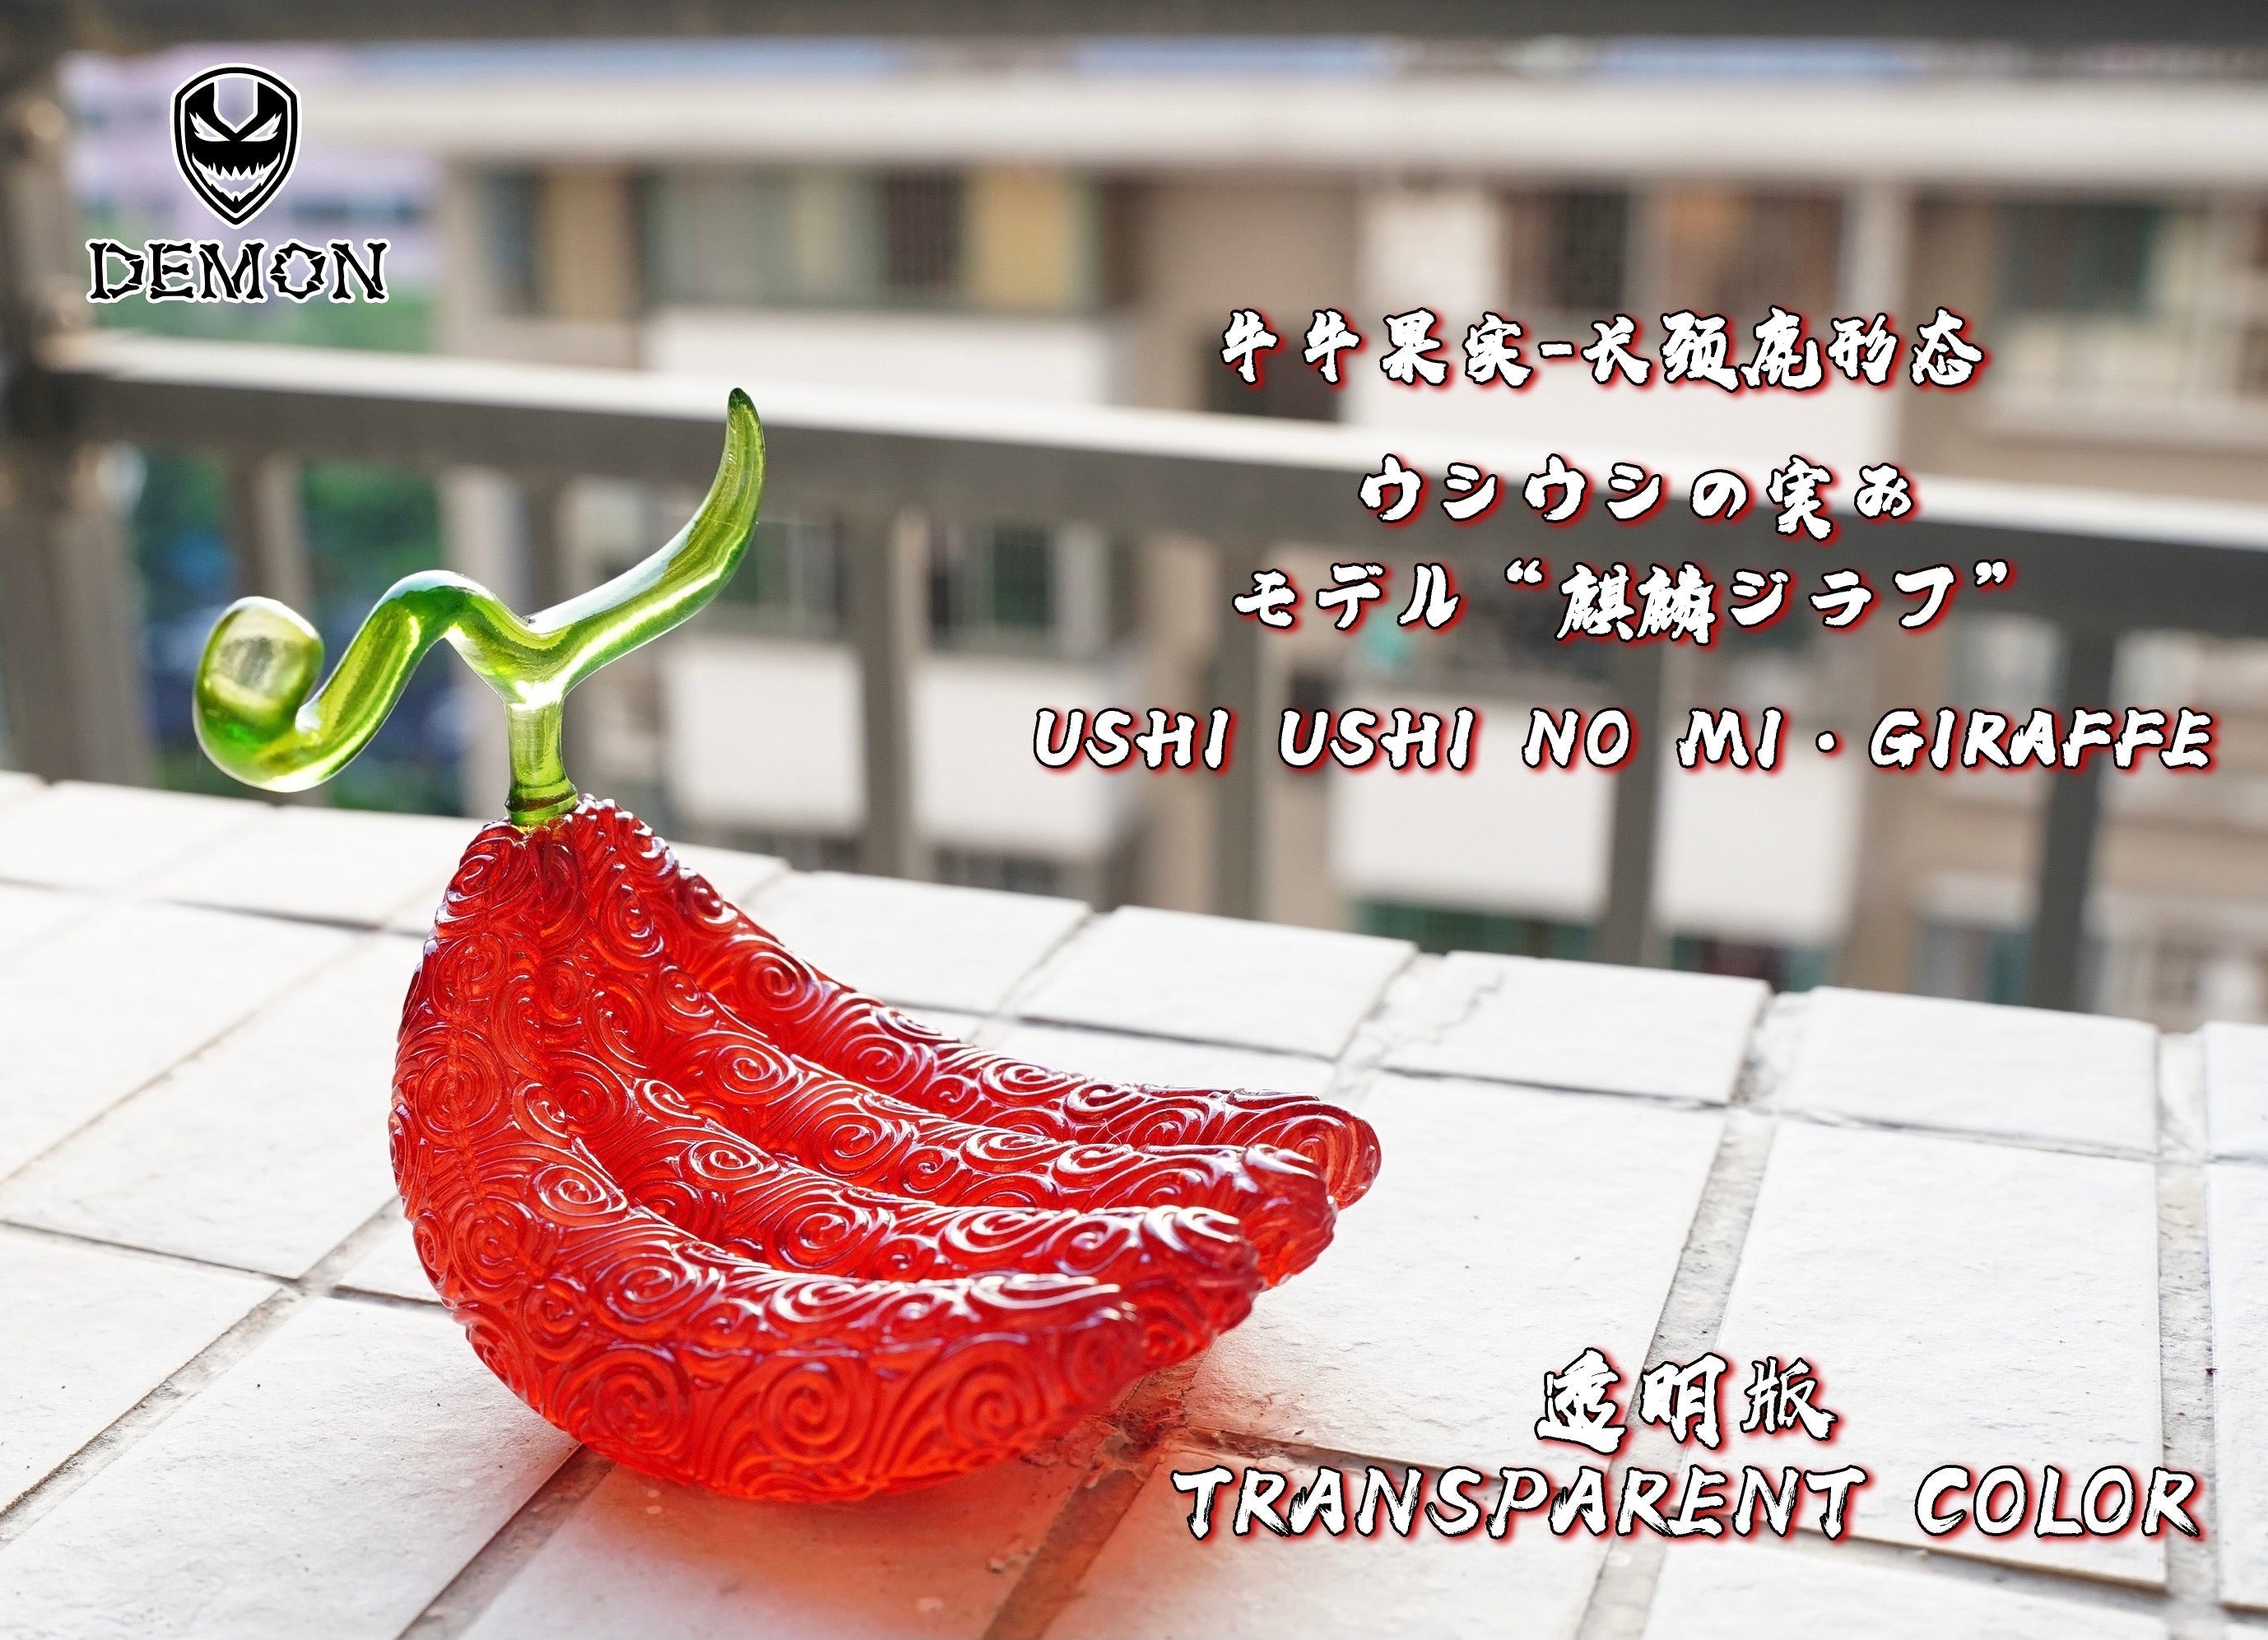 ONE PIECE Devil Fruit Collection Figure vol.3 [5.Kage Kage no Mi]